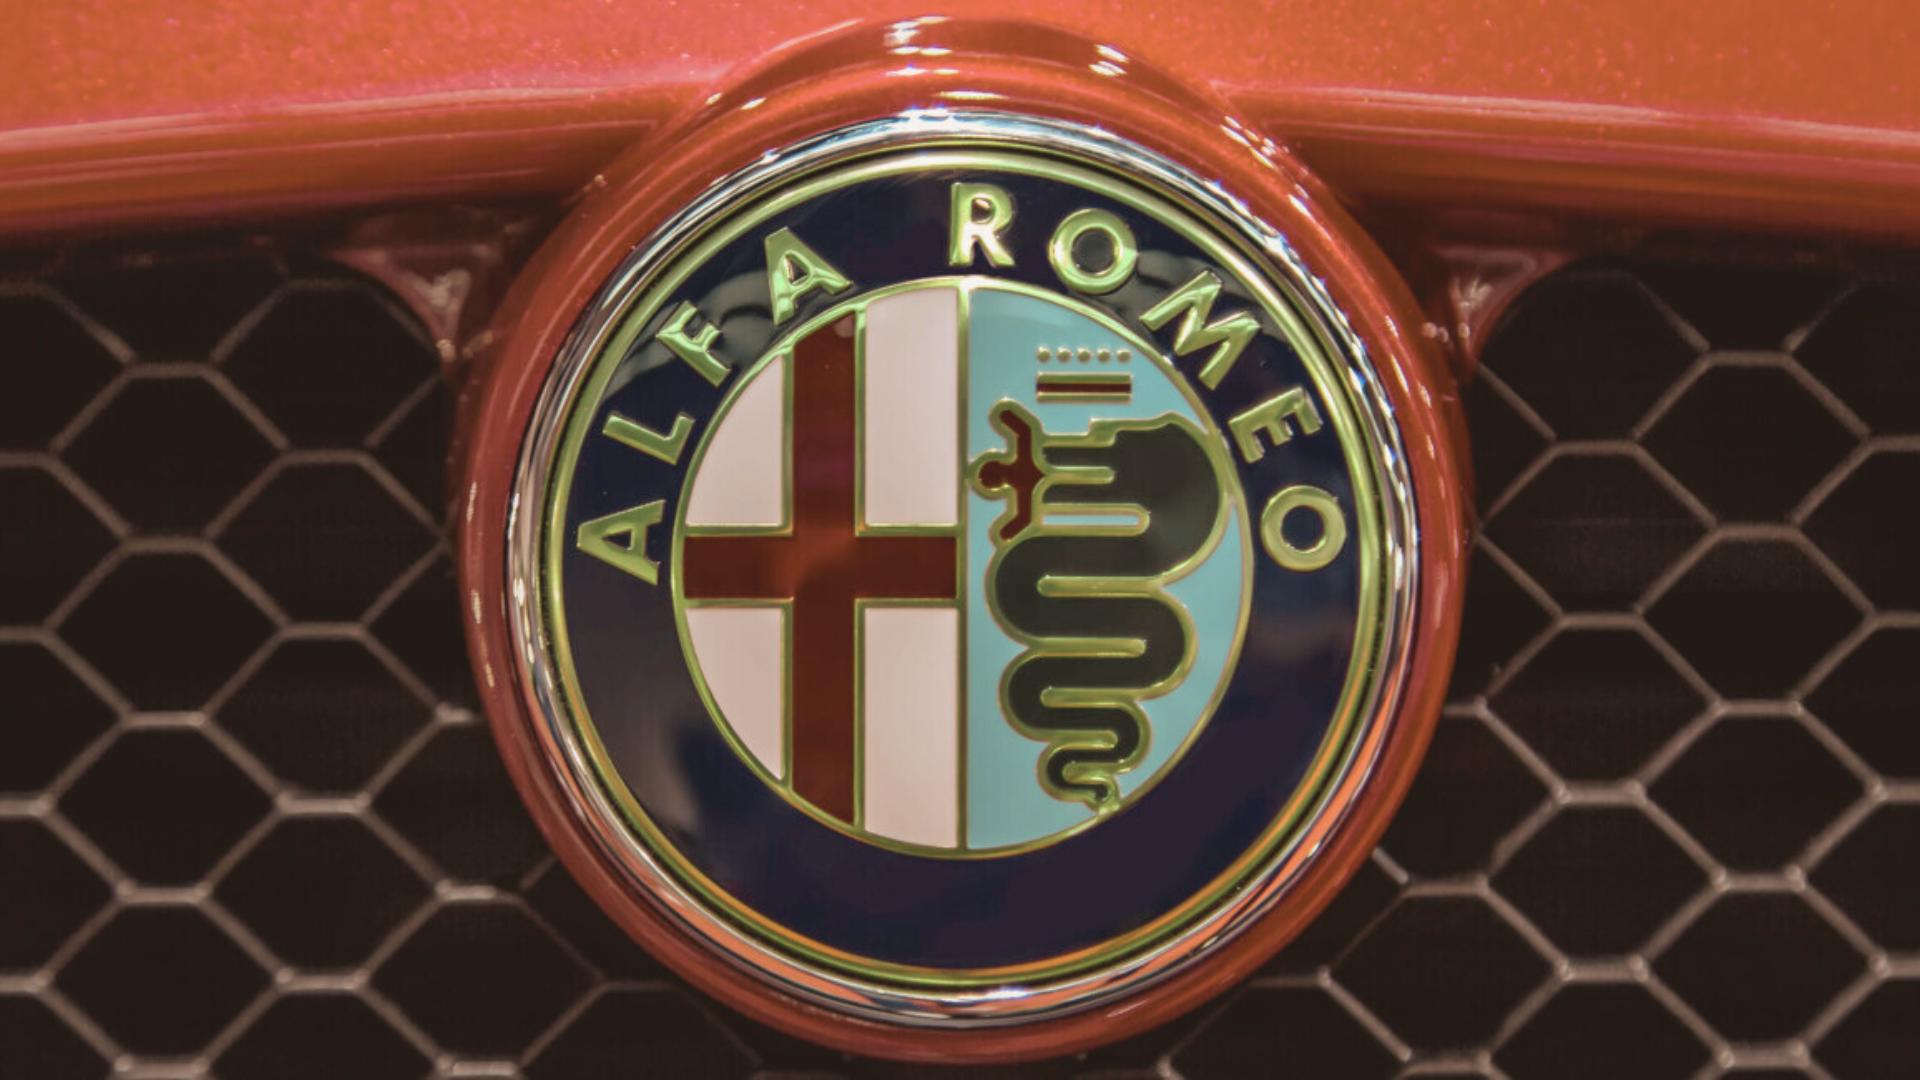 Alfa Romeo, Udicon: “Valorizzare il Made in Italy indebolito da strategie di marketing fuorvianti”